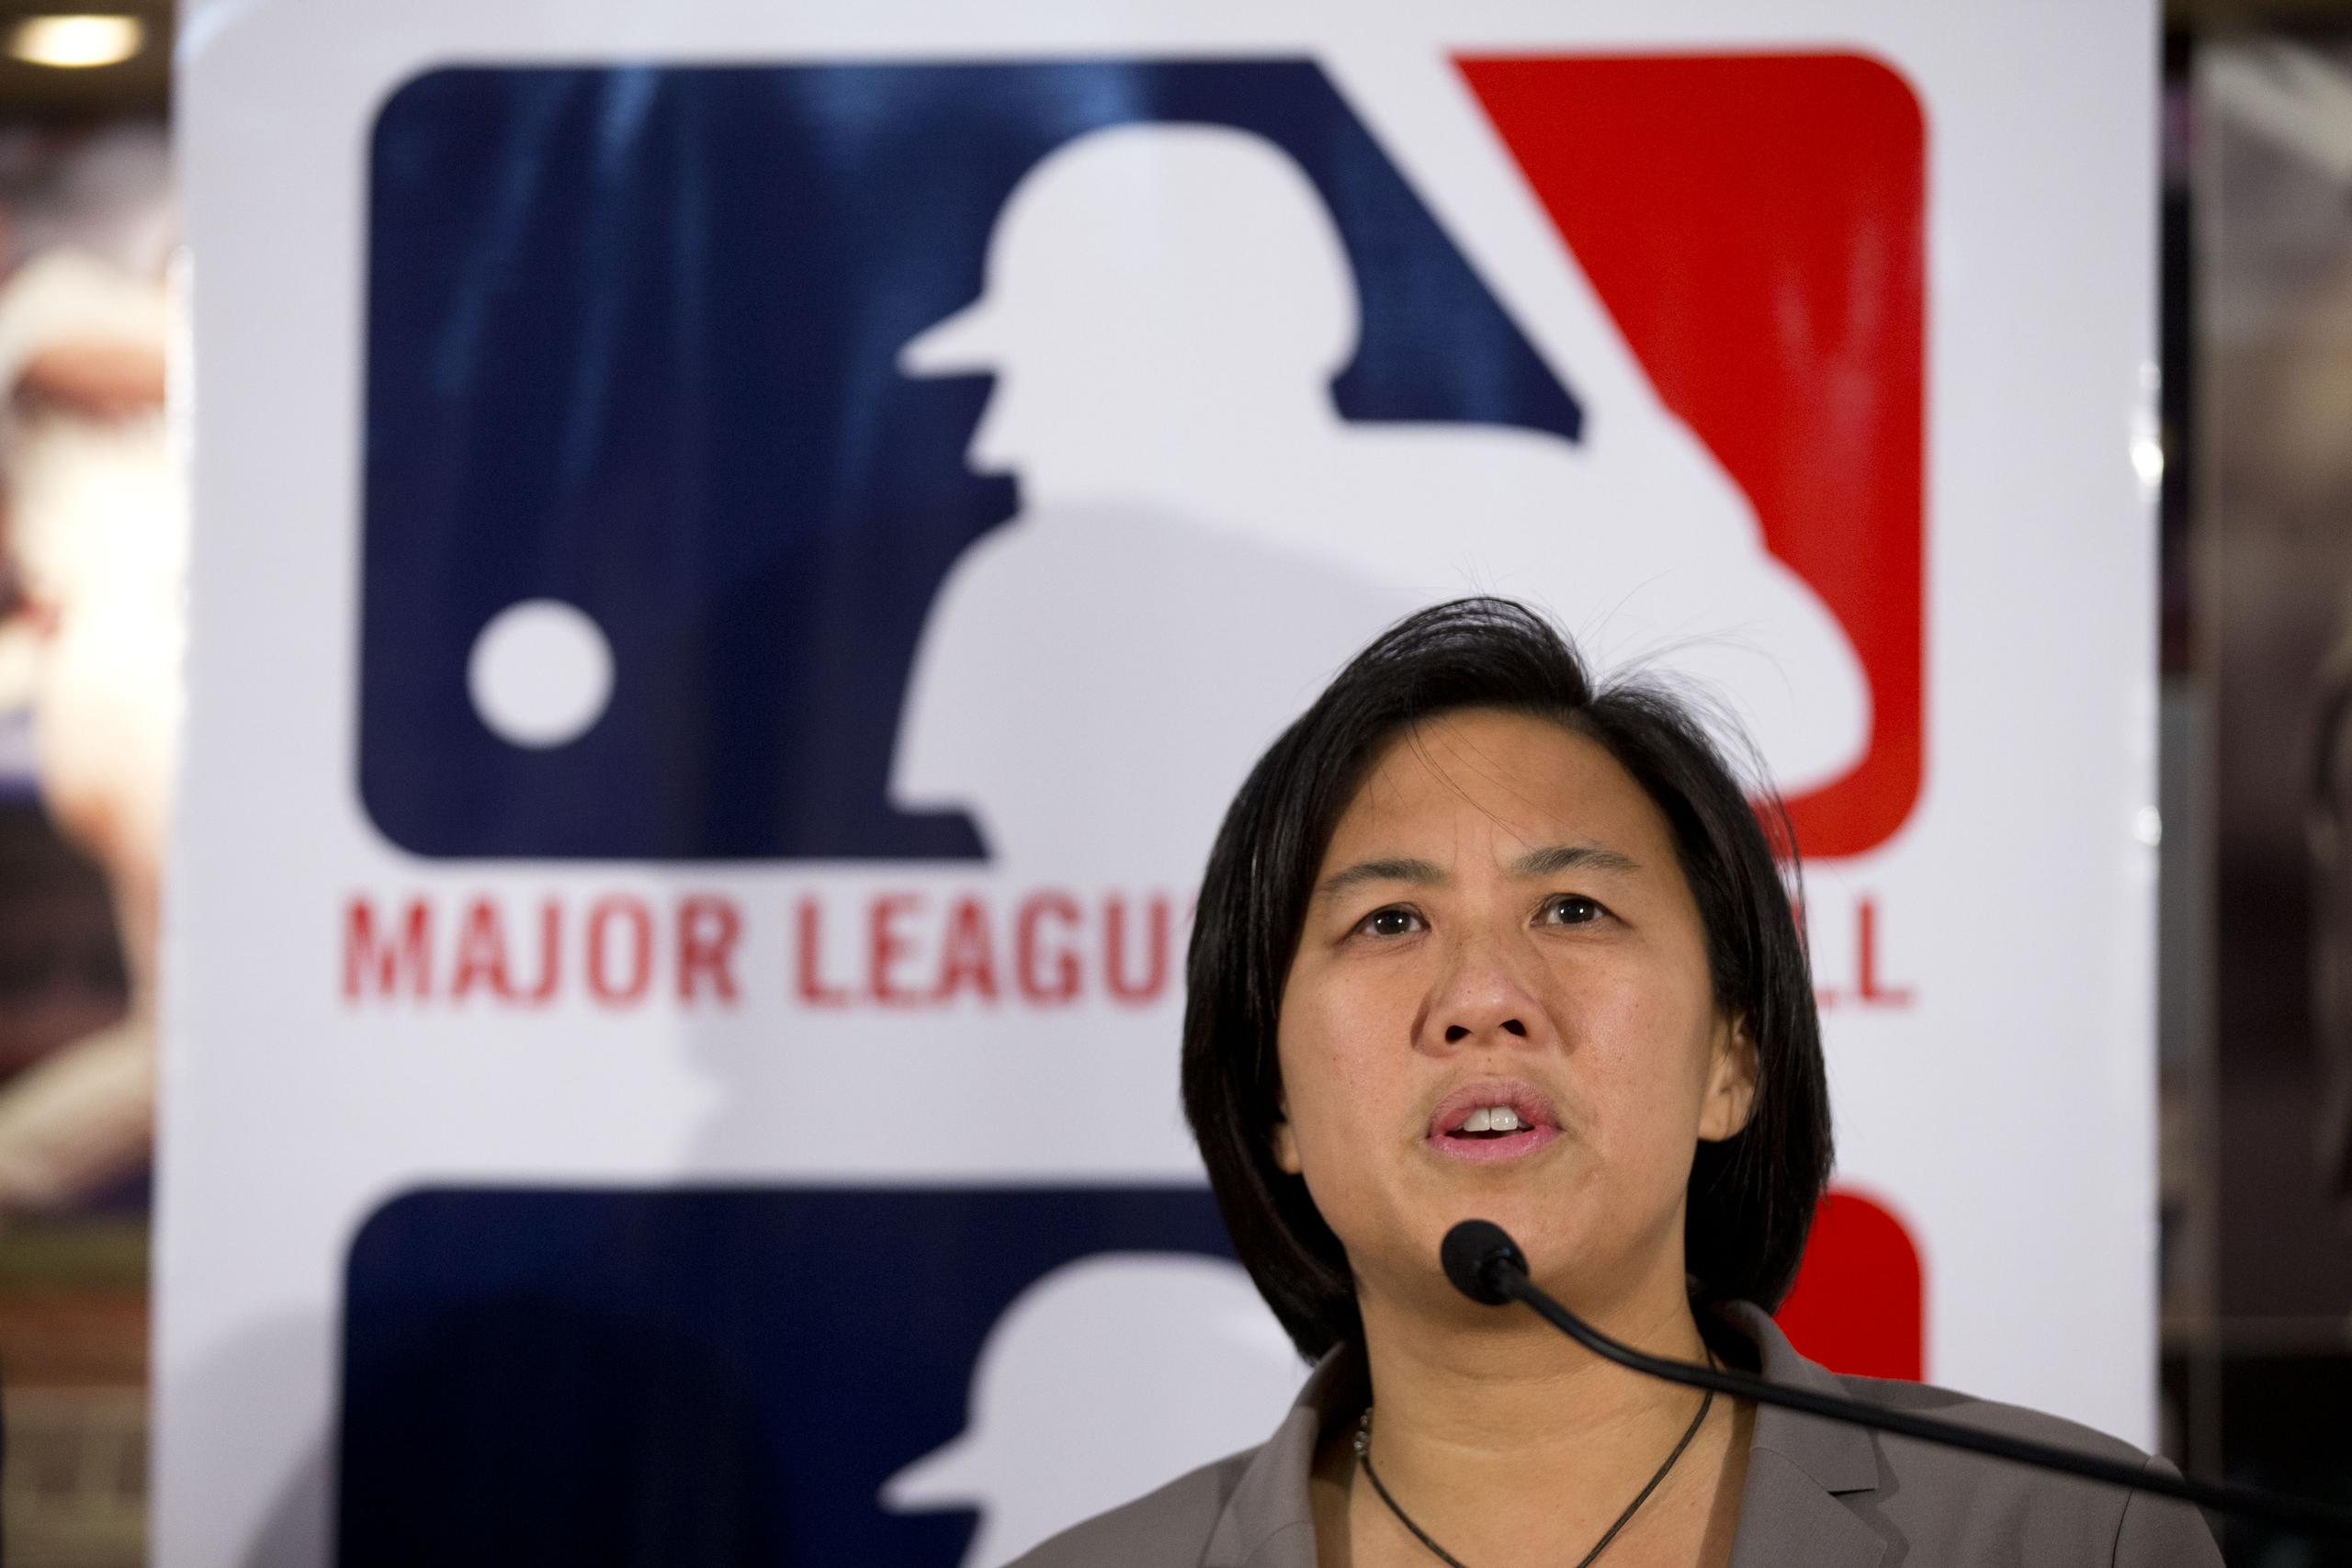 Kim Ng fue jugadora de softbol, ascendió como asistente de gerente general por la organización de los Yankees y hoy día es la primera mujer gerente general en las Grandes Ligas.